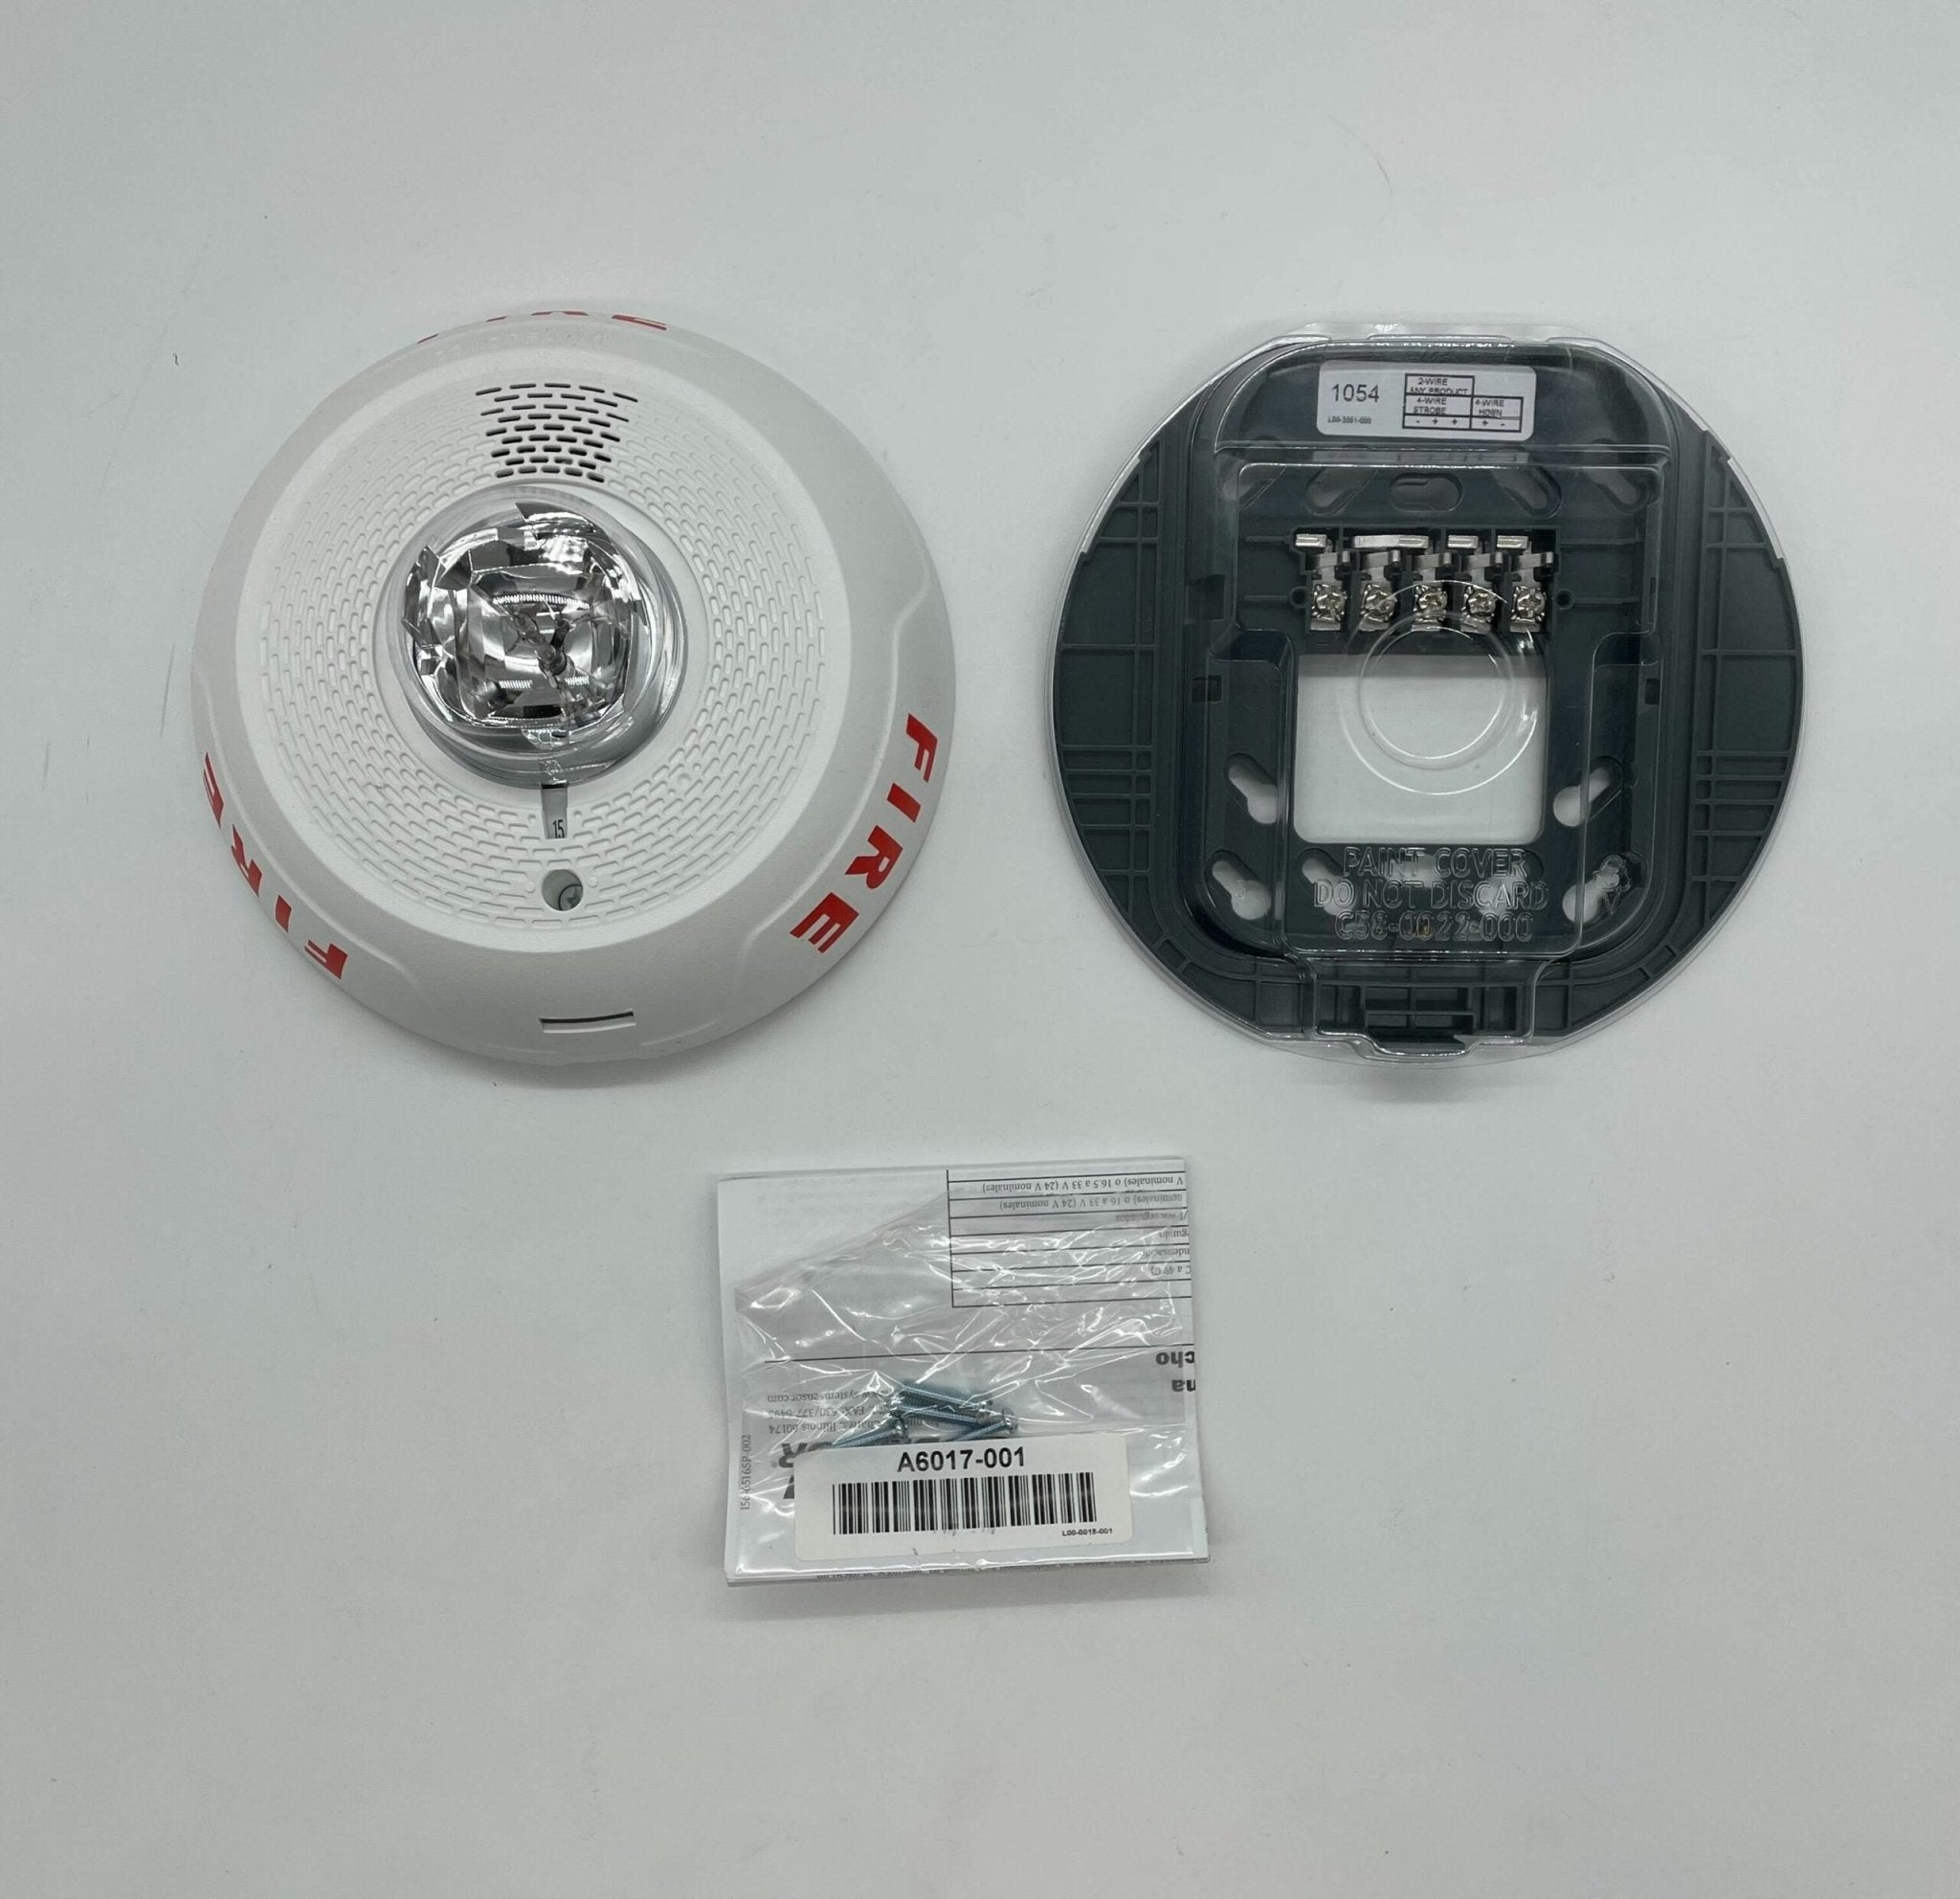 System Sensor PC4WL Horn Strobe White Ceiling - The Fire Alarm Supplier